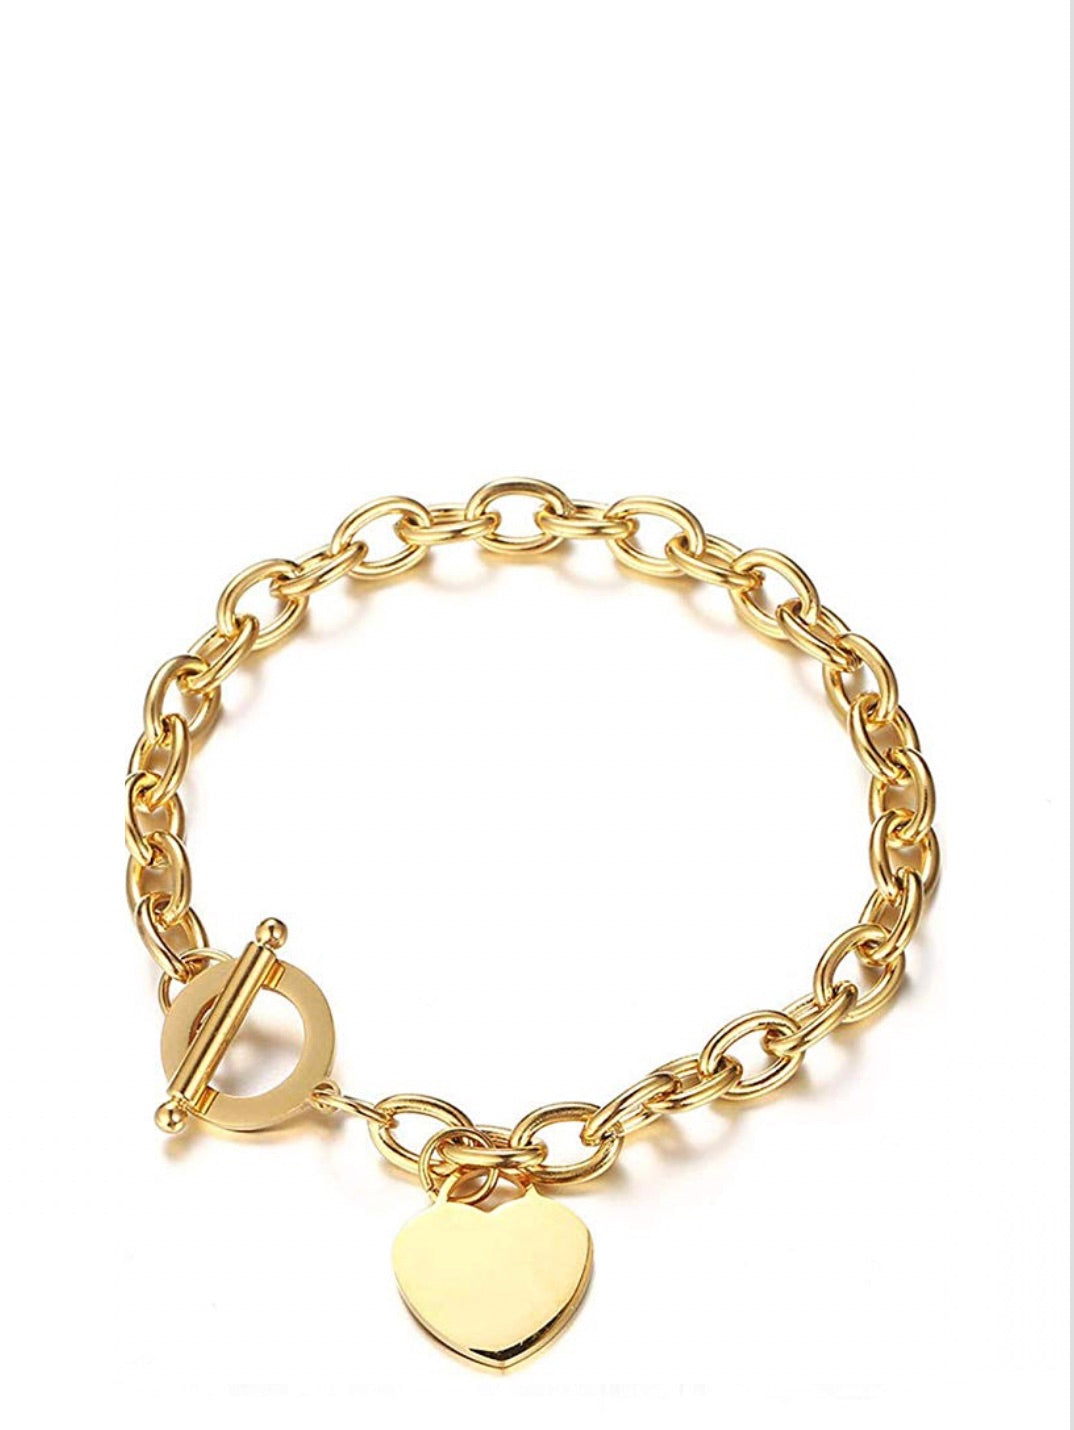 18K Gold Heart Charm Bracelet